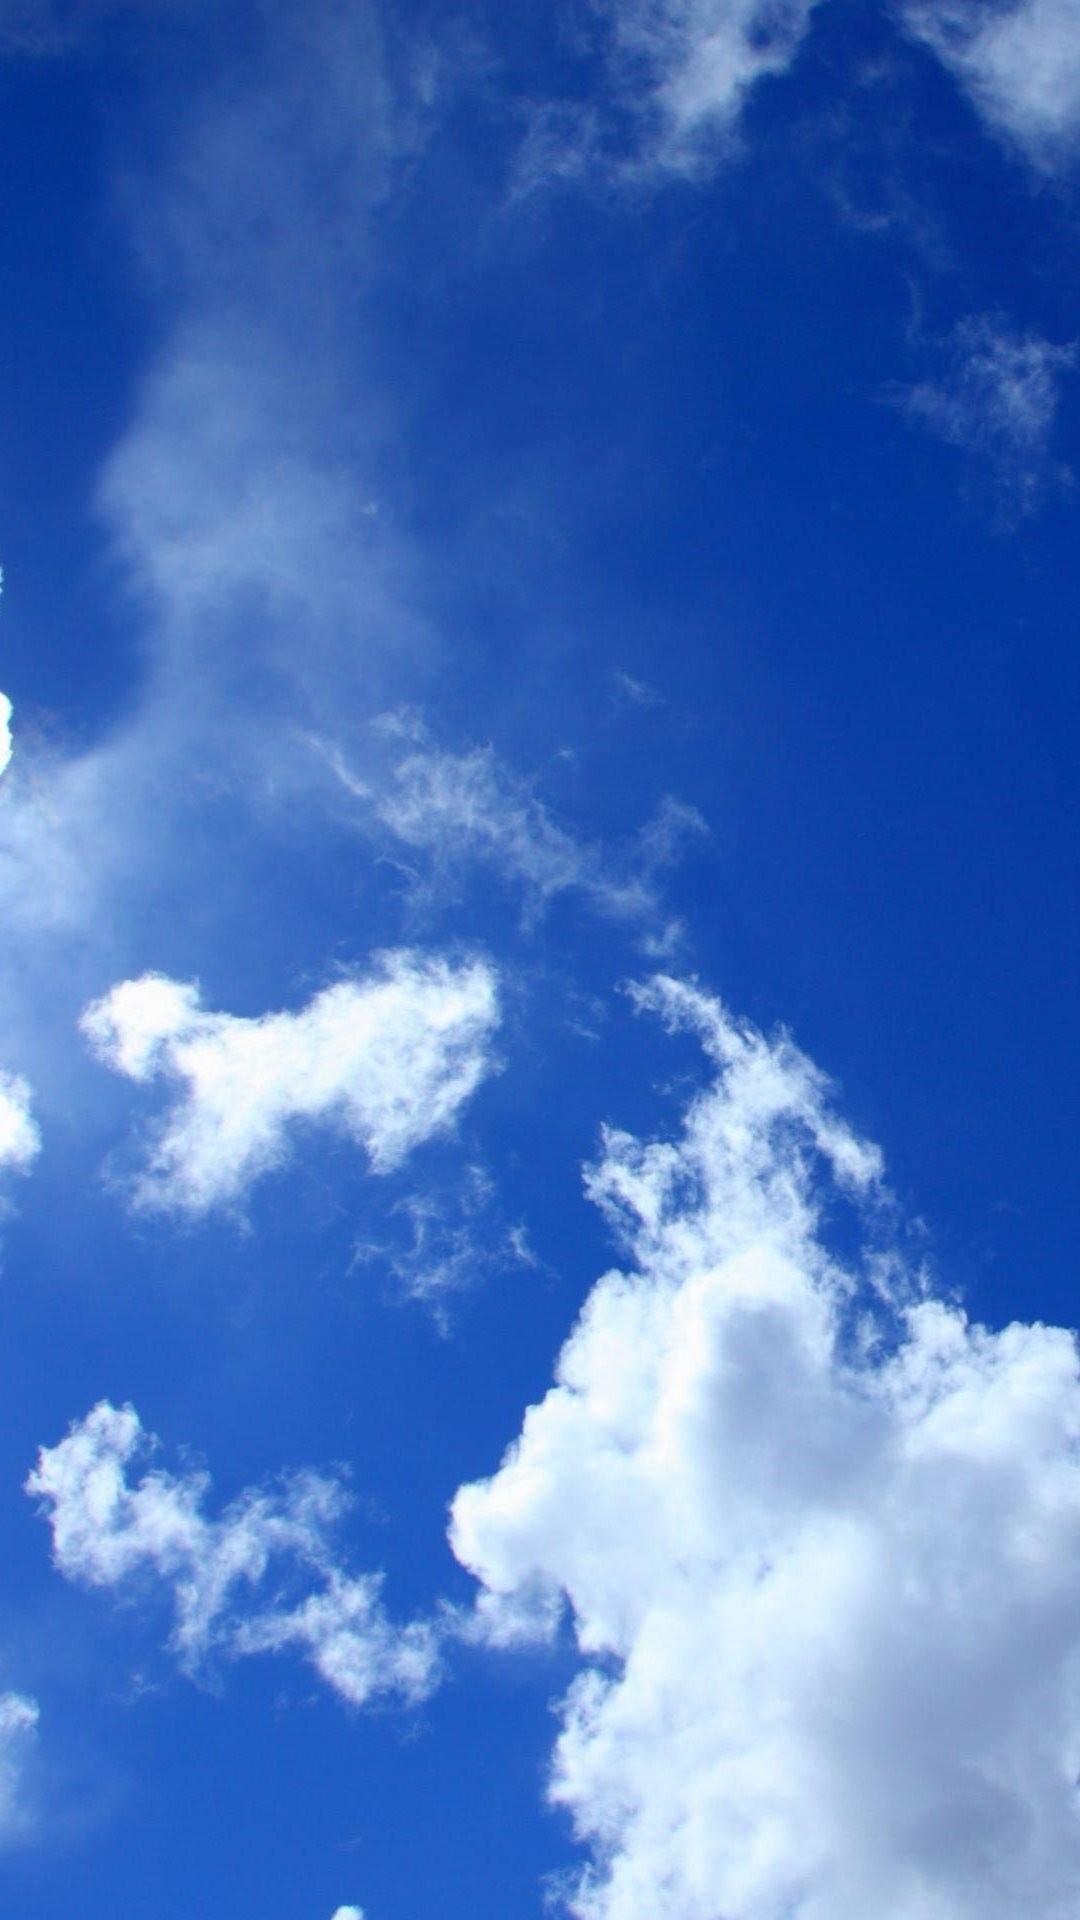 1080x1920 Blauer Himmel weiÃe Wolken Lockscreen iPhone 6 Plu iPhone 8 Plus Wallpaper